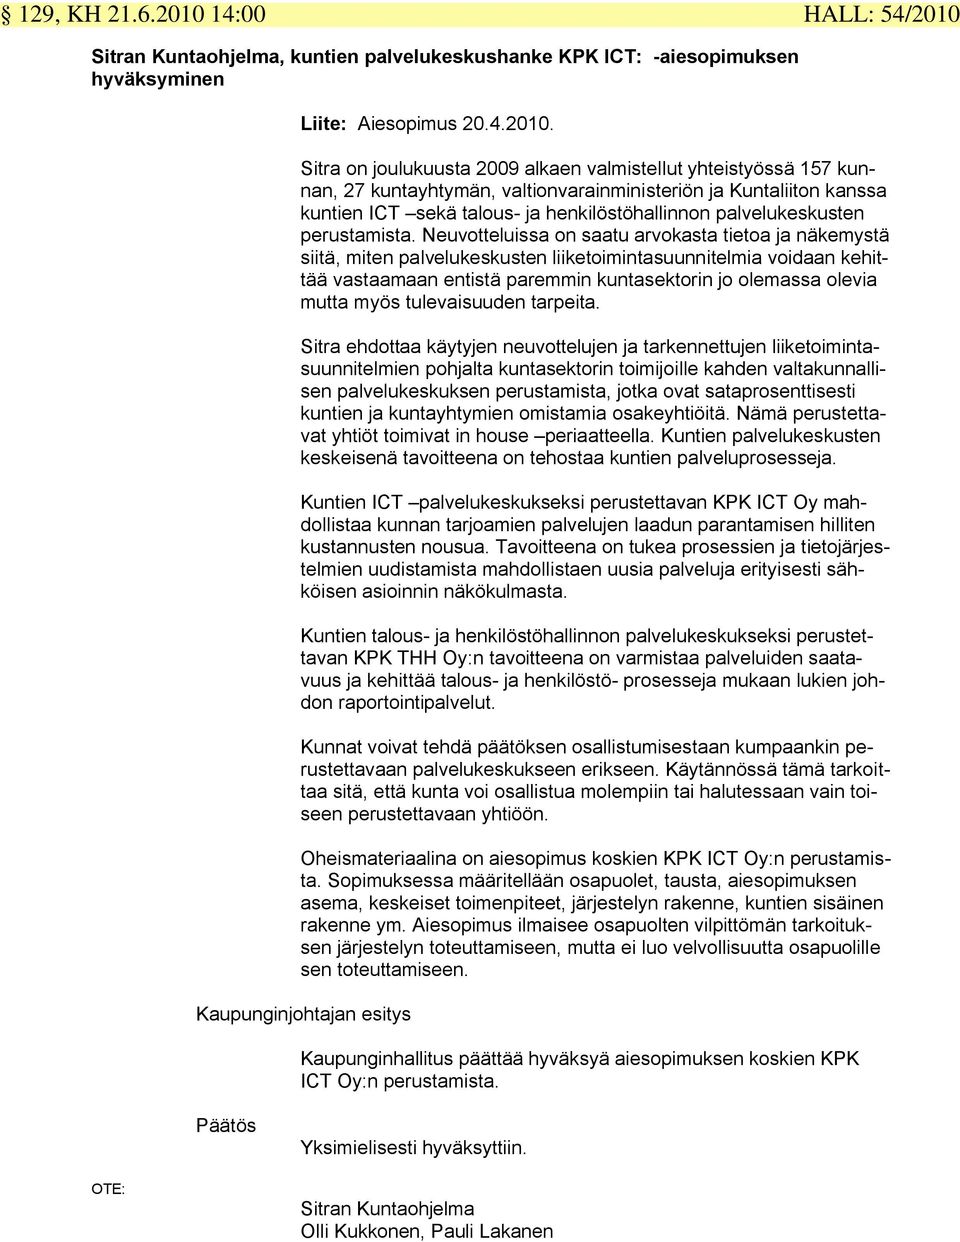 Sitran Kuntaohjelma, kuntien palvelukeskushanke KPK ICT: -aiesopimuksen hyväksyminen Liite: Aiesopimus 20.4.2010.